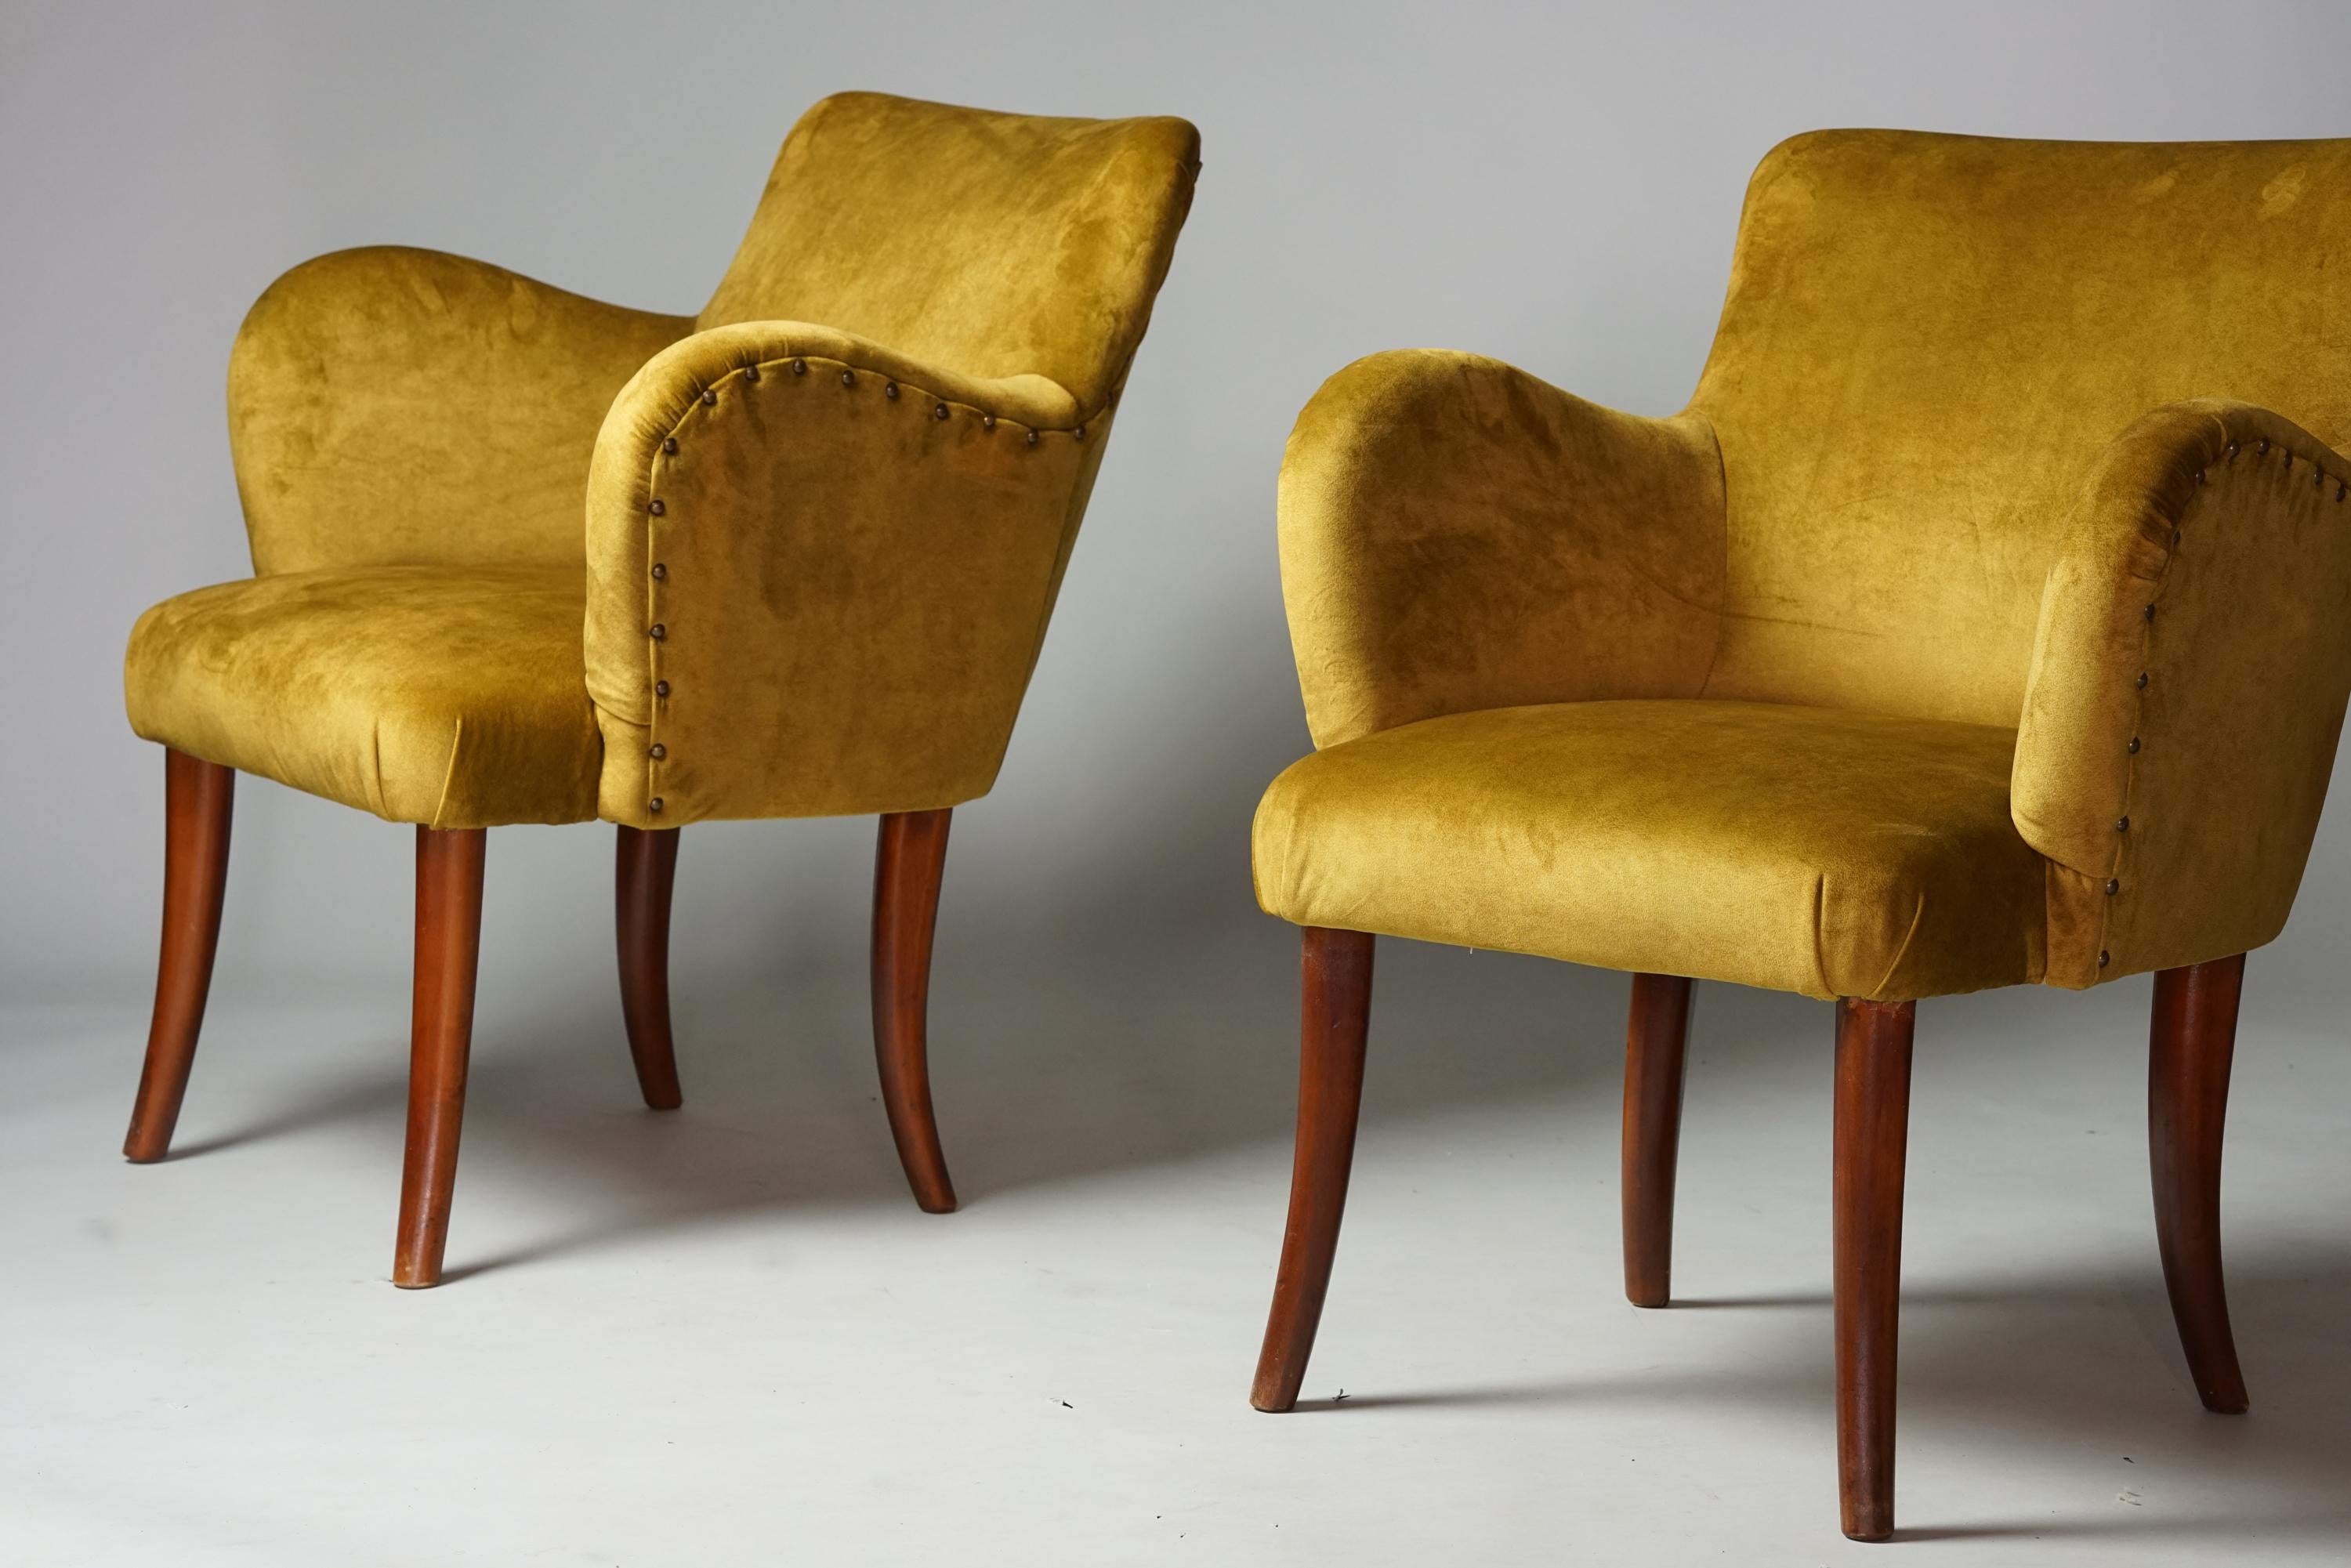 Sessel im Stil von Gunnel Nyman, 1940er Jahre. Beine aus gebeizter Birke, neu gepolstert mit hochwertigem, samtartigem Stoff. Details aus Metall. Guter Vintage-Zustand, leichte Patina im Einklang mit Alter und Gebrauch. Die Sessel werden als Set